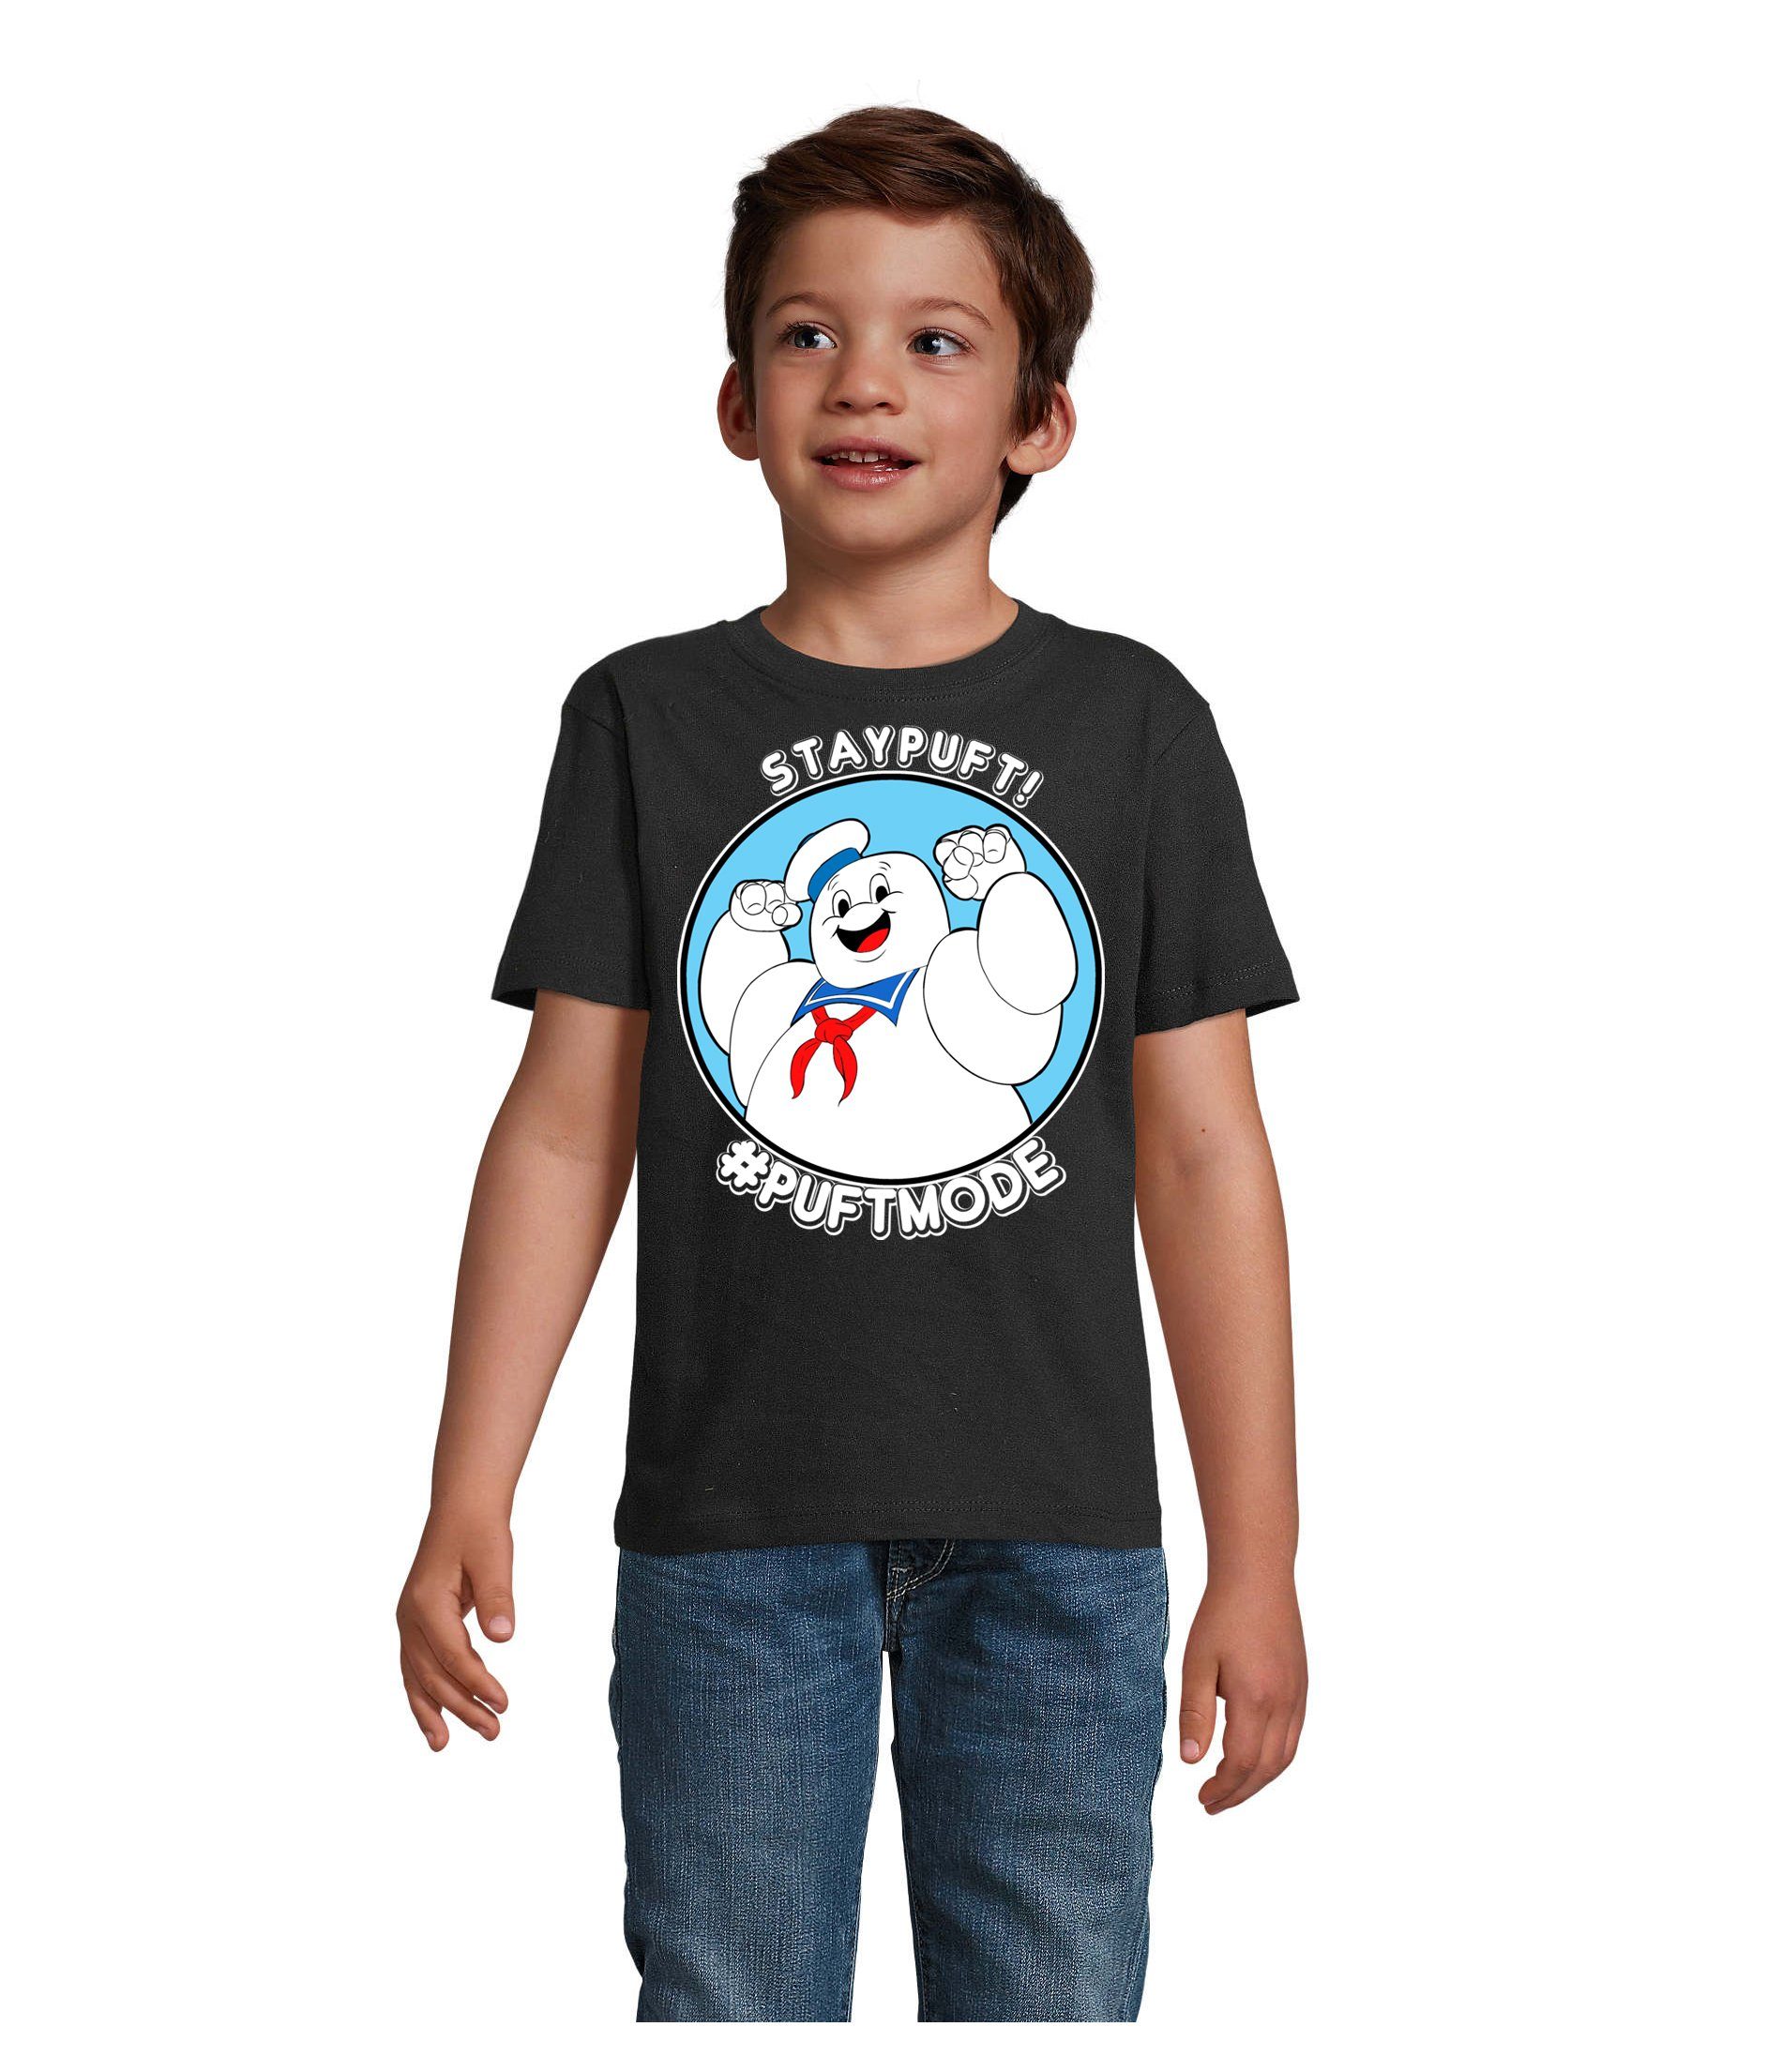 Blondie & Brownie T-Shirt Kinder Marshmallowman Ghostbusters Slimer Geisterjäger Schwarz | T-Shirts